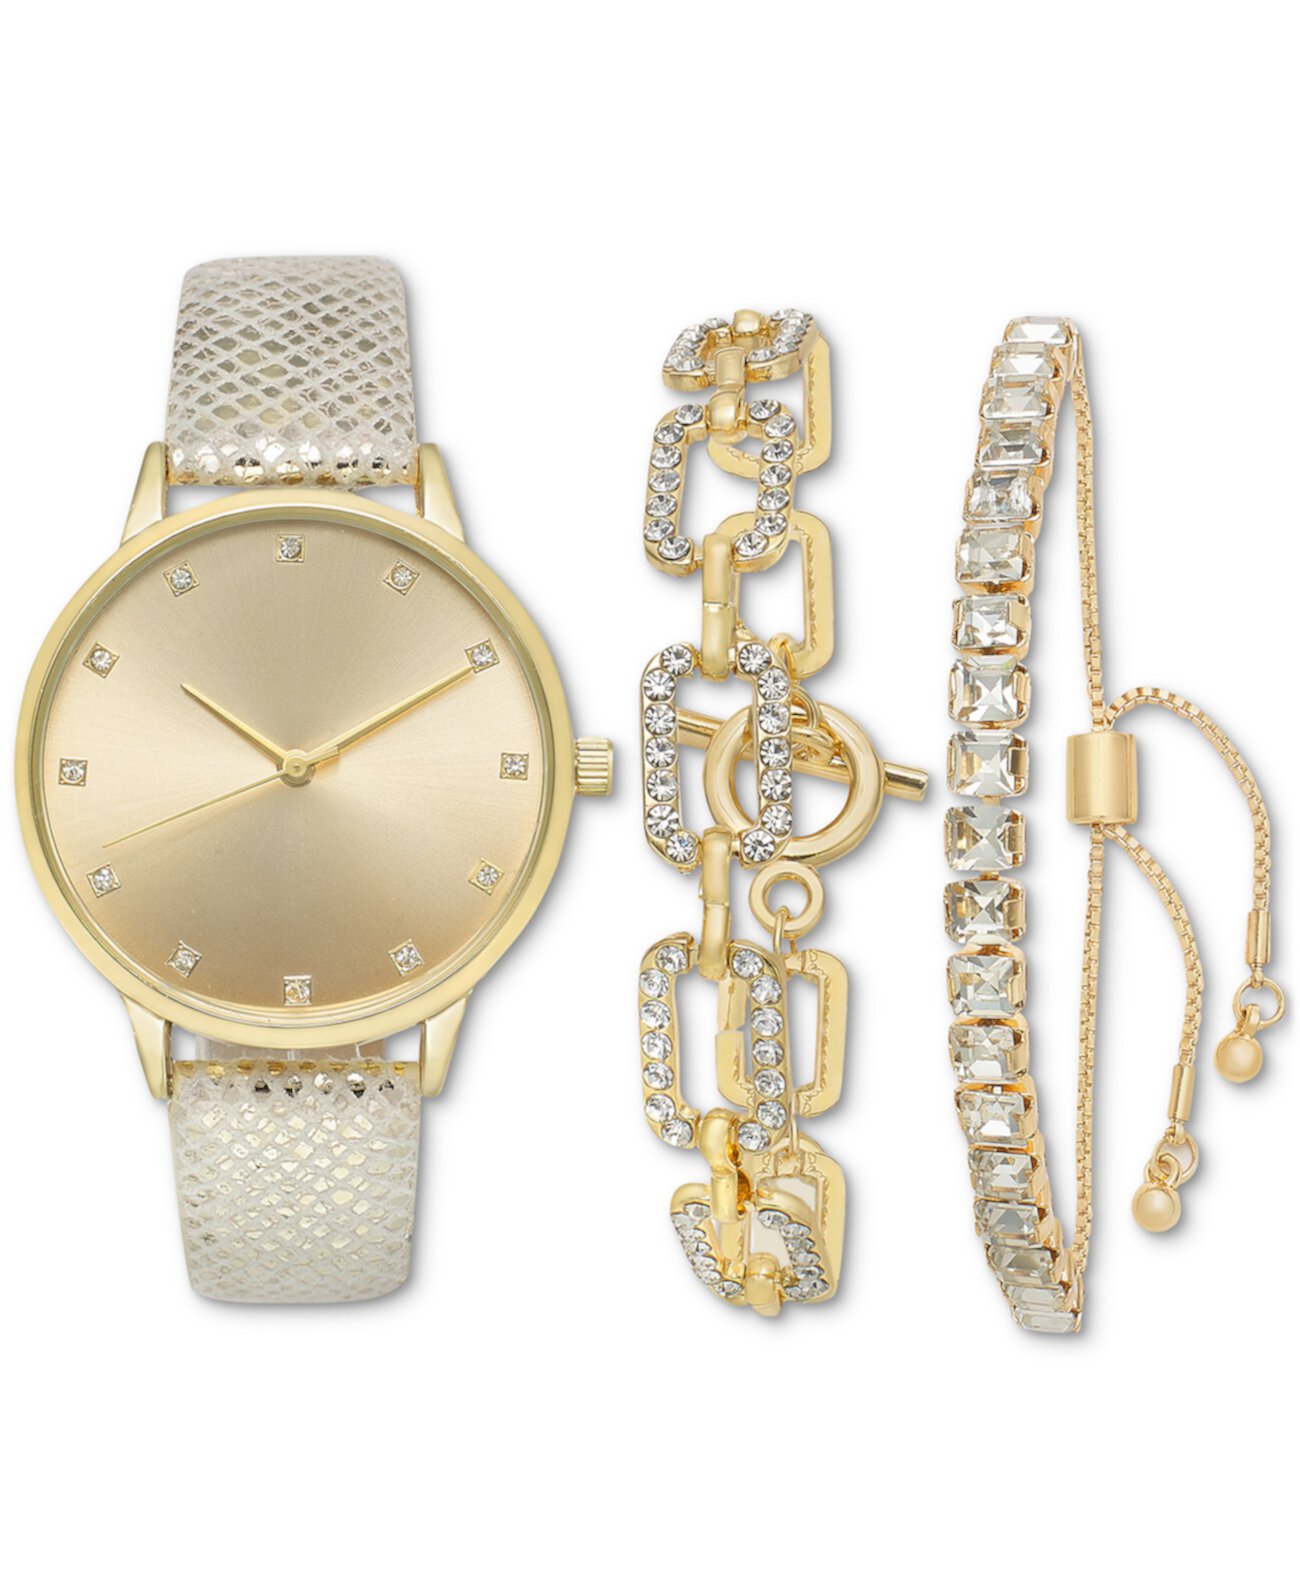 Подарочный набор женских часов с белым ремешком длиной 36 м, созданный для Macy's I.N.C. International Concepts